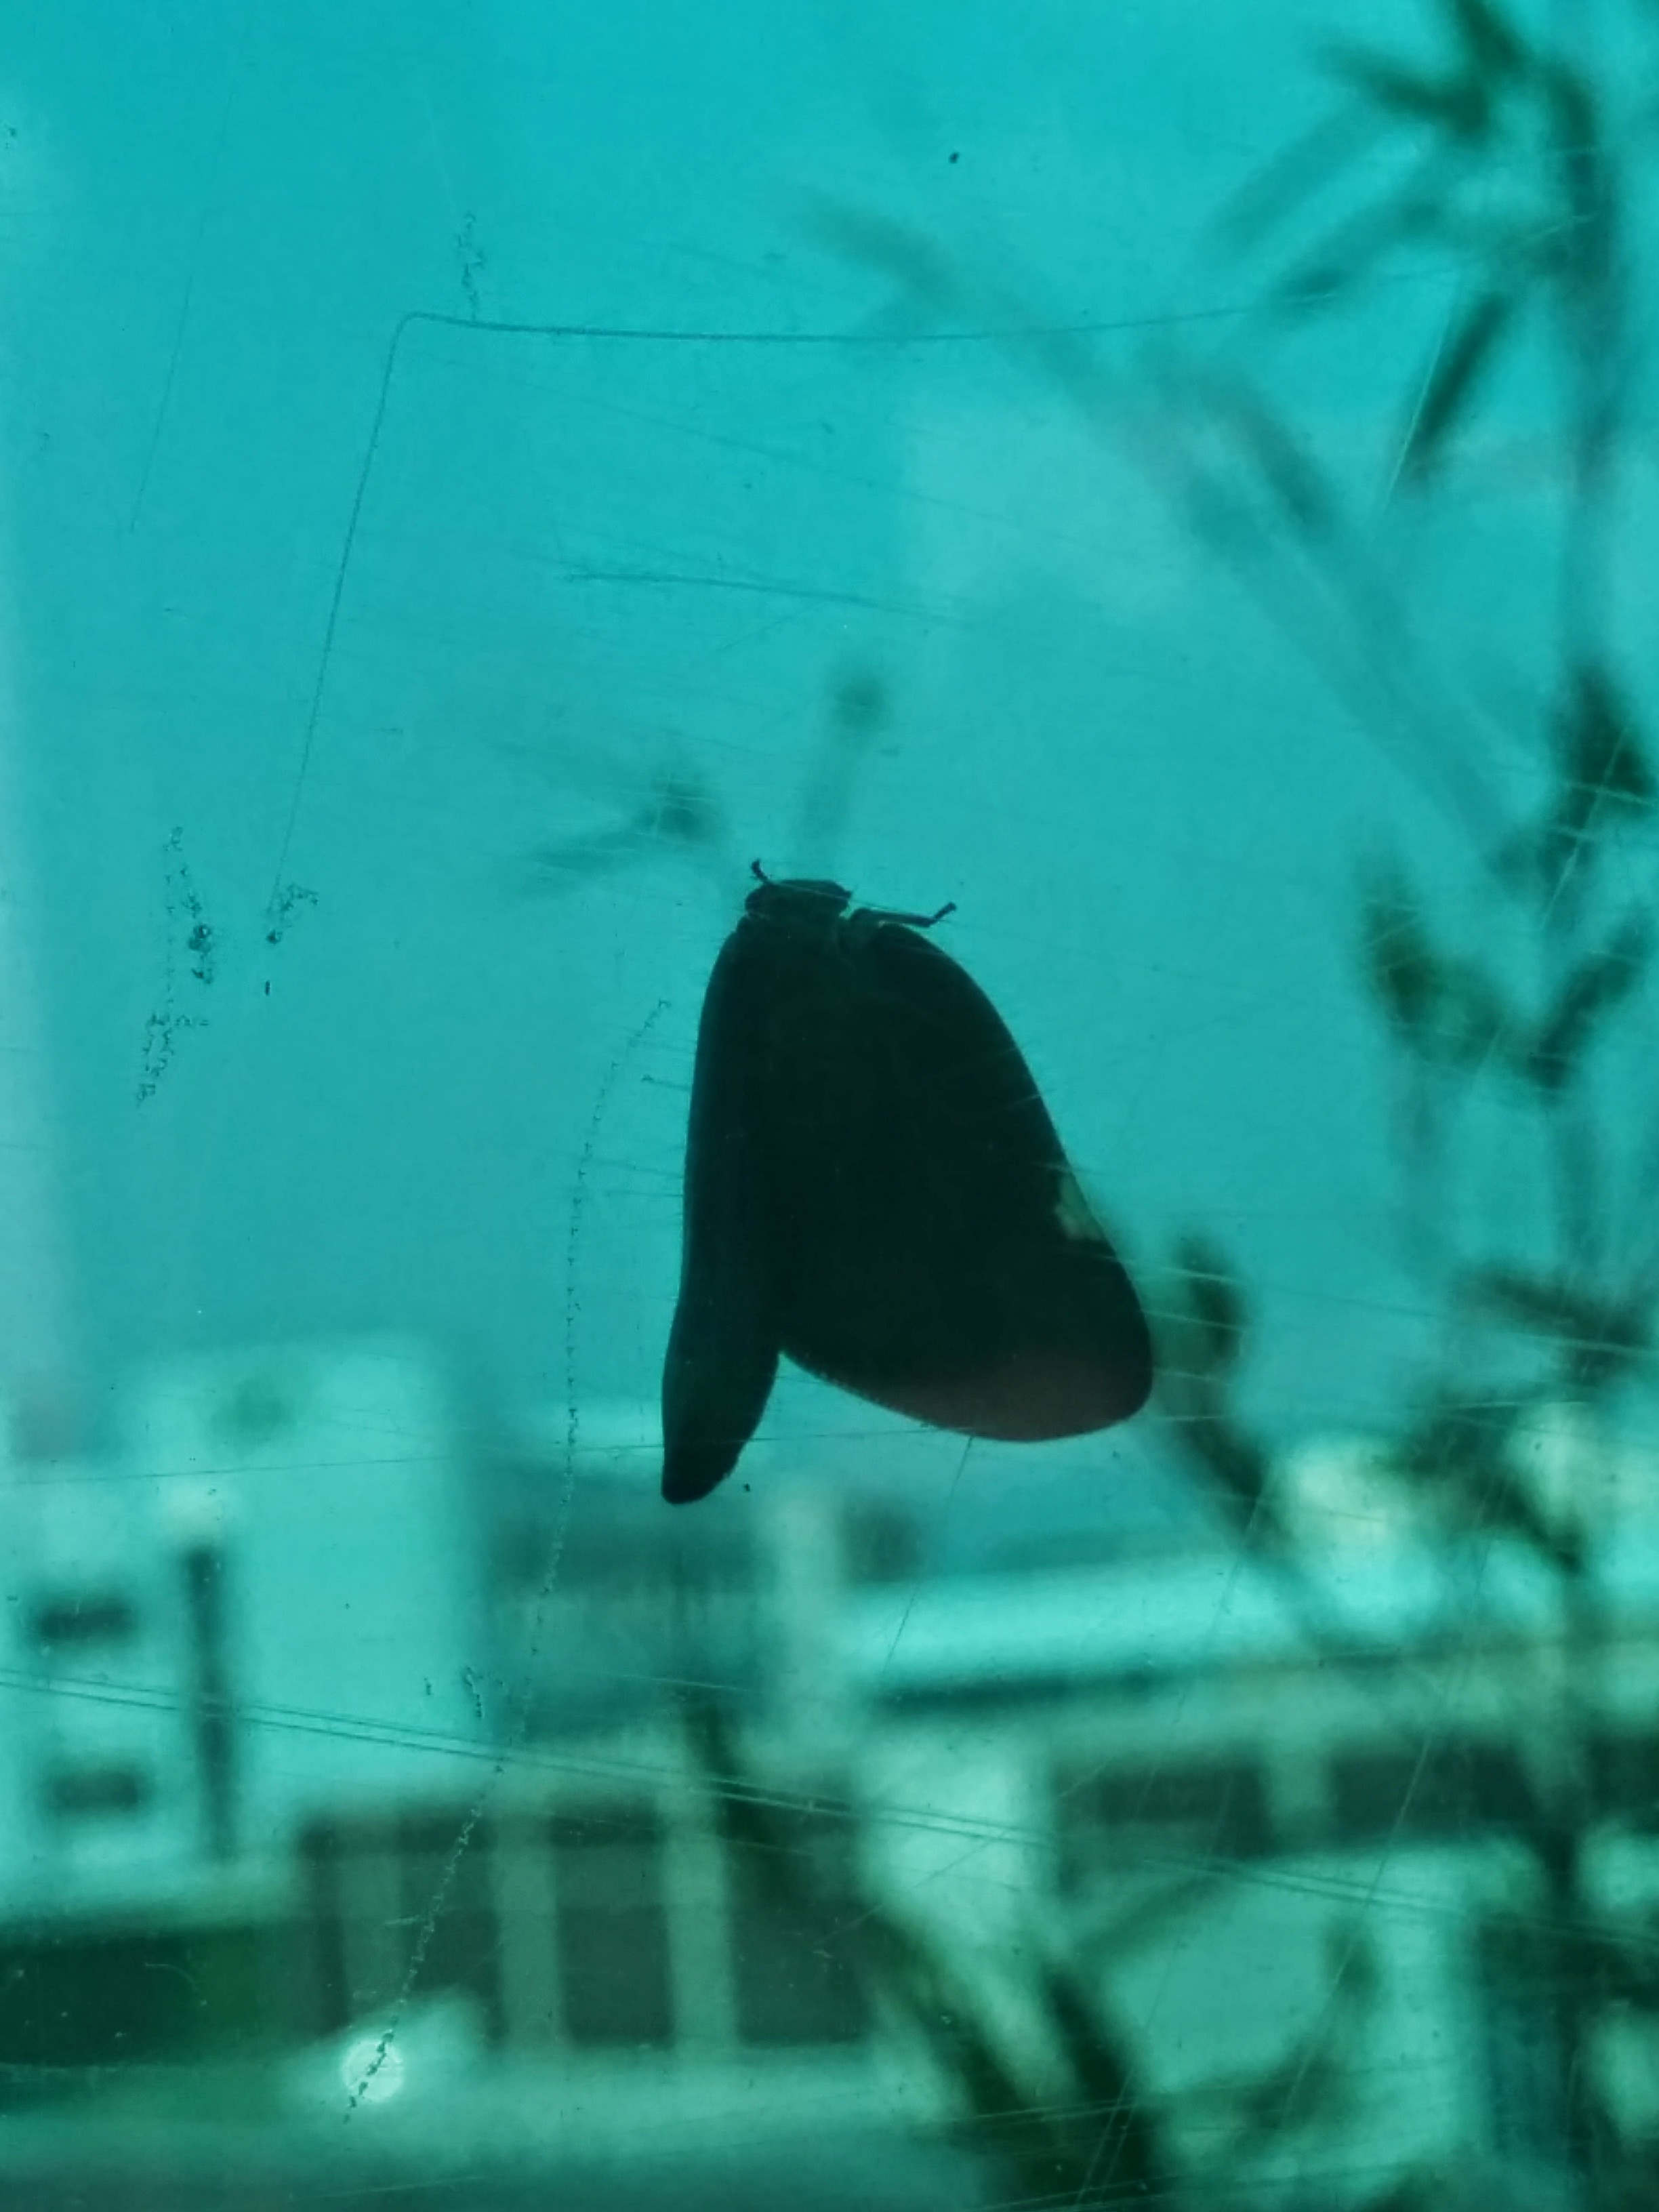 IMG_20140721_170439.jpg 투명한 아크릴판에 붙은 갈색날개매미충